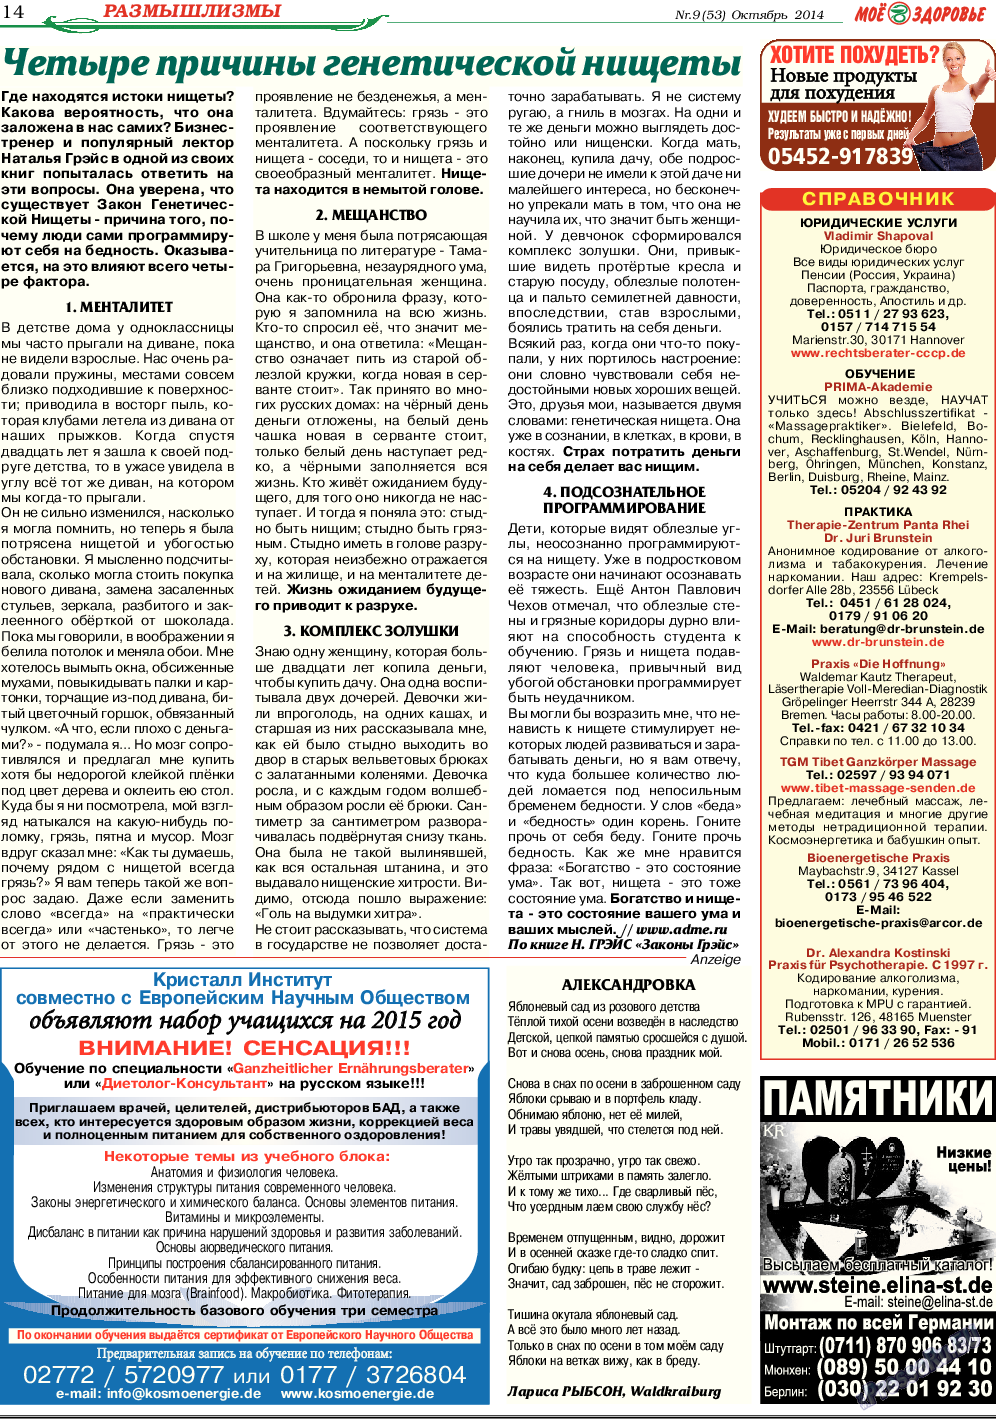 Кругозор, газета. 2014 №10 стр.14